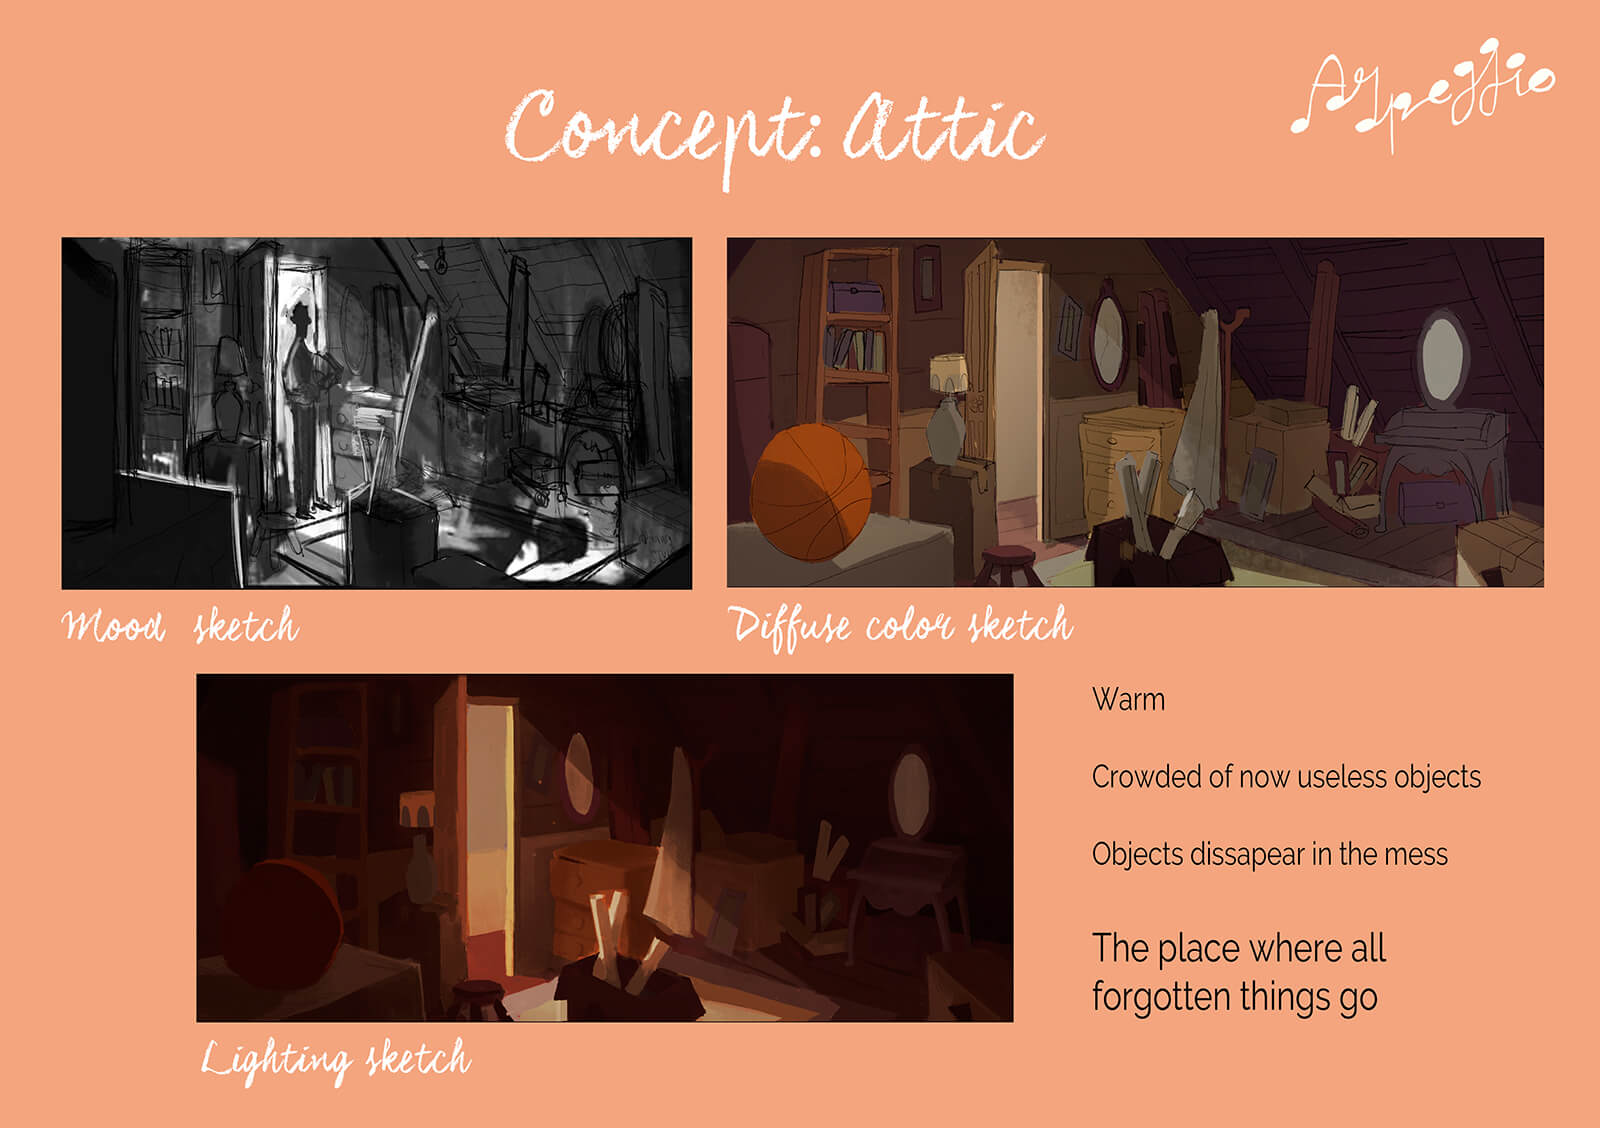 Concepto del escenario del ático del cortometraje Arpeggio. Incluye bocetos del tono, color e iluminación de la localización.